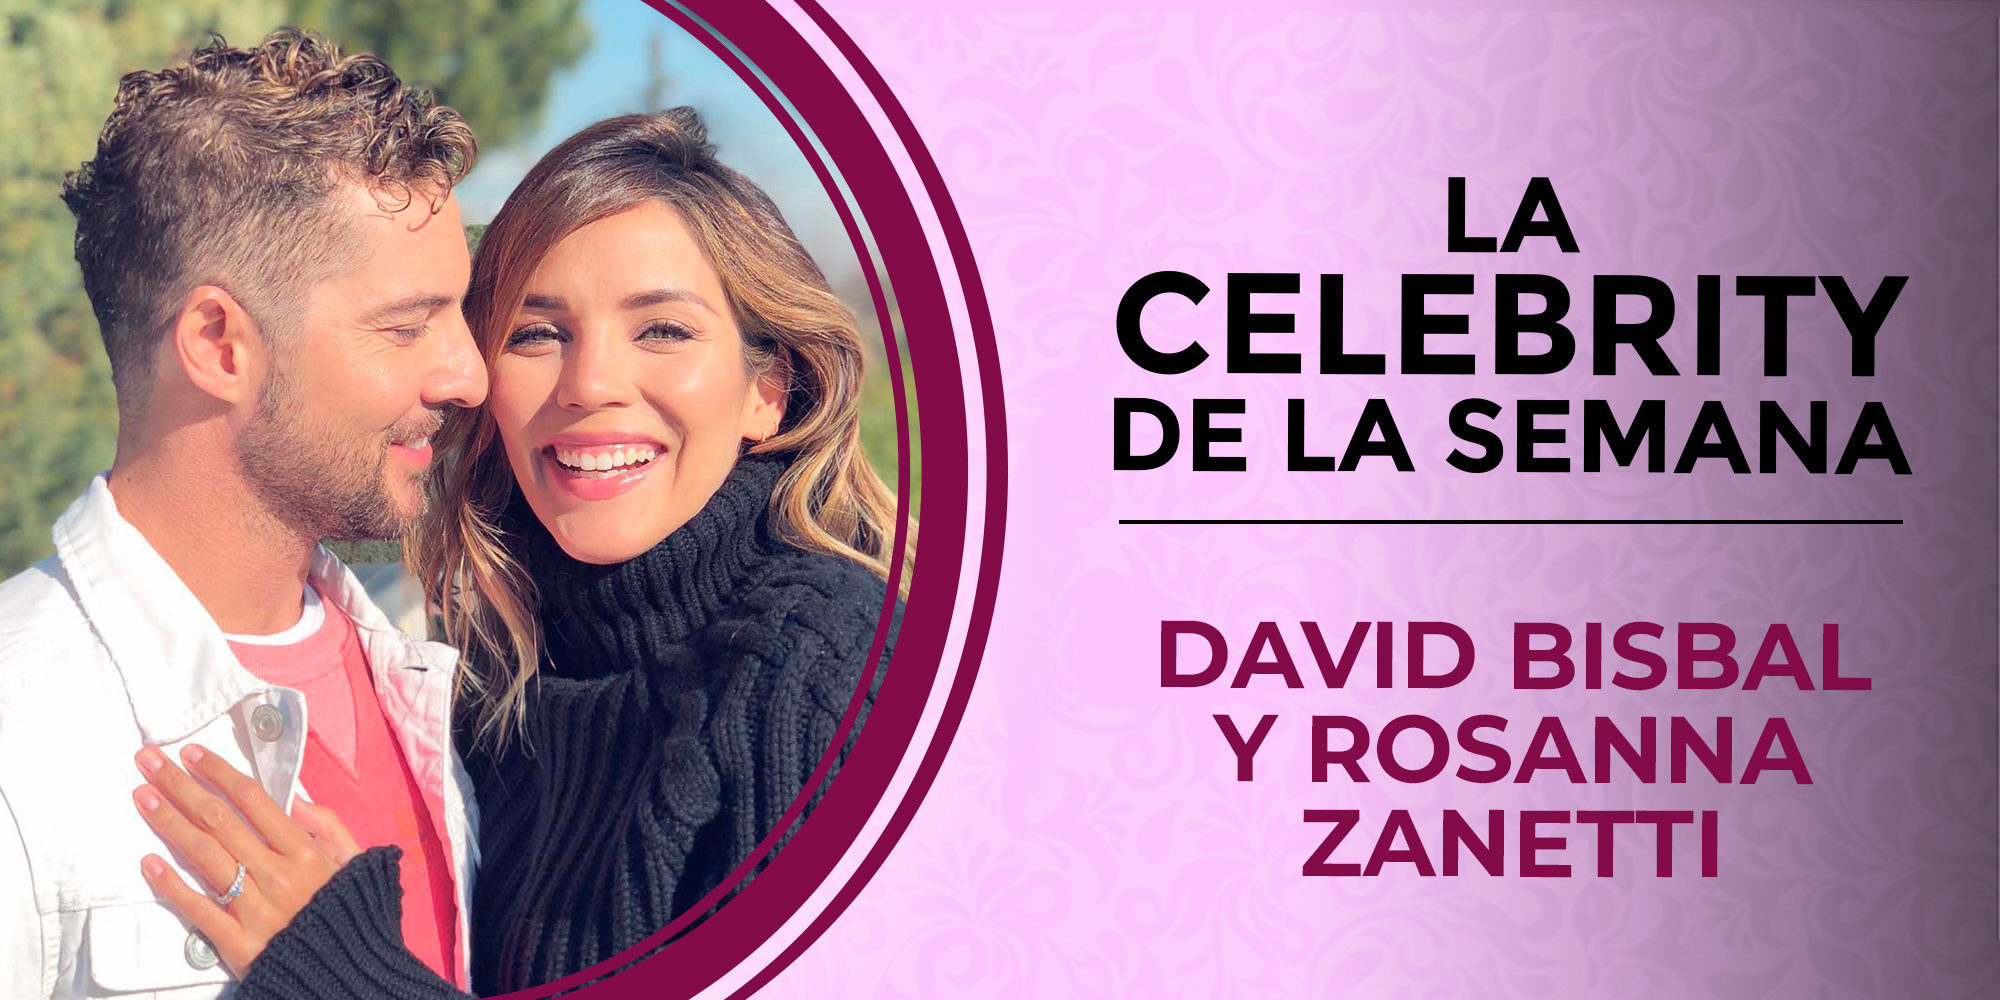 David Bisbal y Rosanna Zanetti se convierten en las celebrities de la semana tras anunciar su compromiso